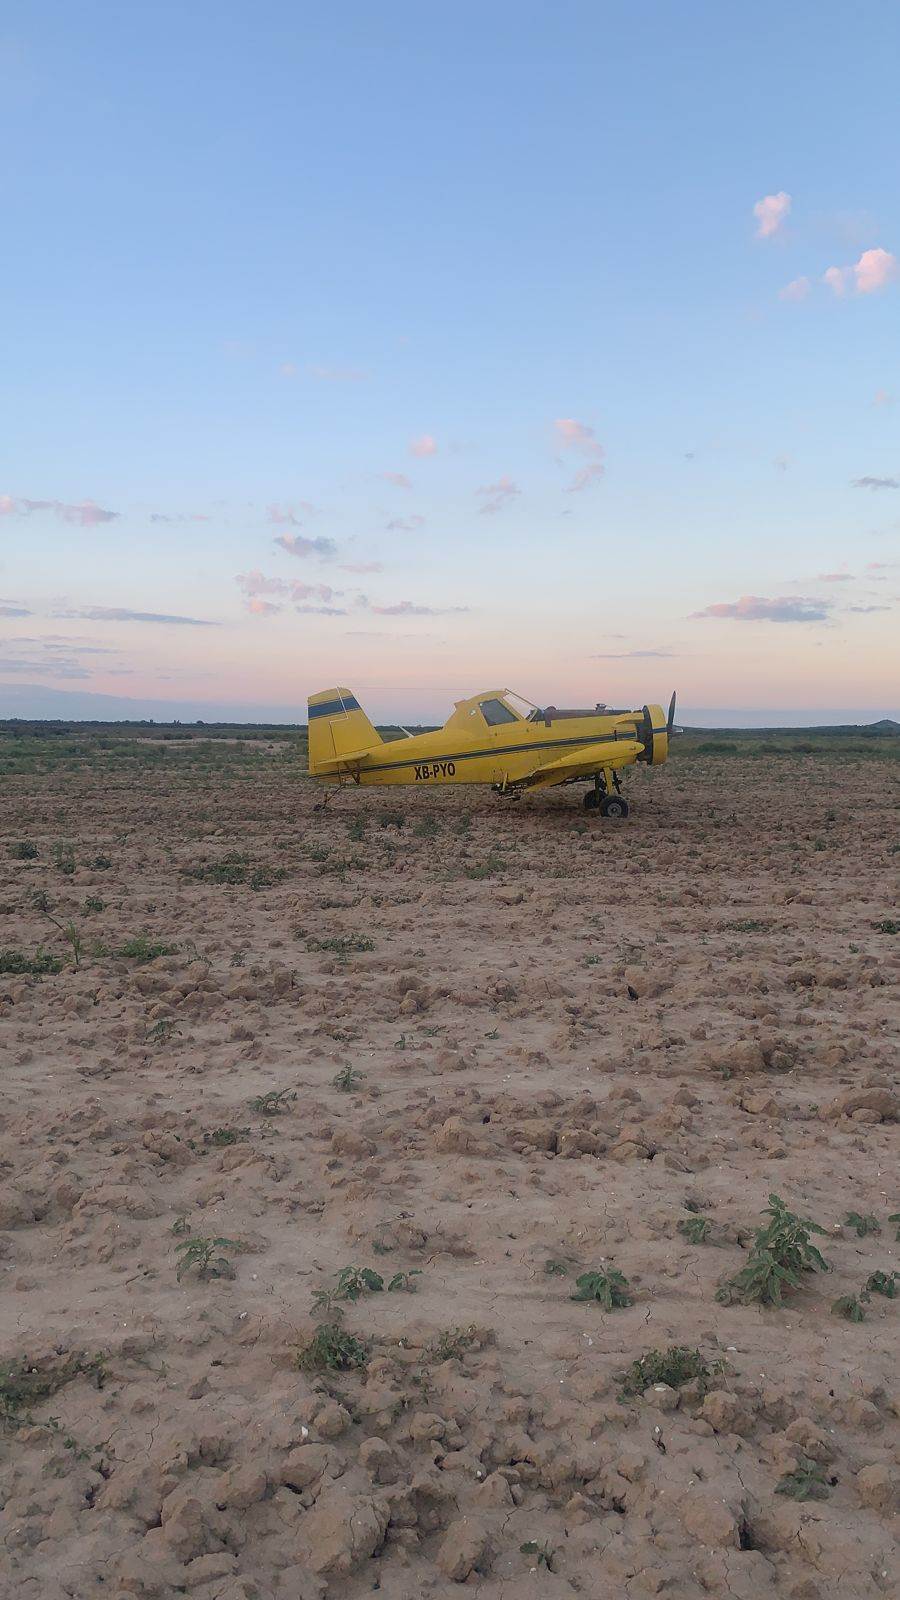 El piloto de una aeronave de fumigación realizó un aterrizaje forzoso al interior de un rancho, luego de que presuntamente tuvo una falle en el motor